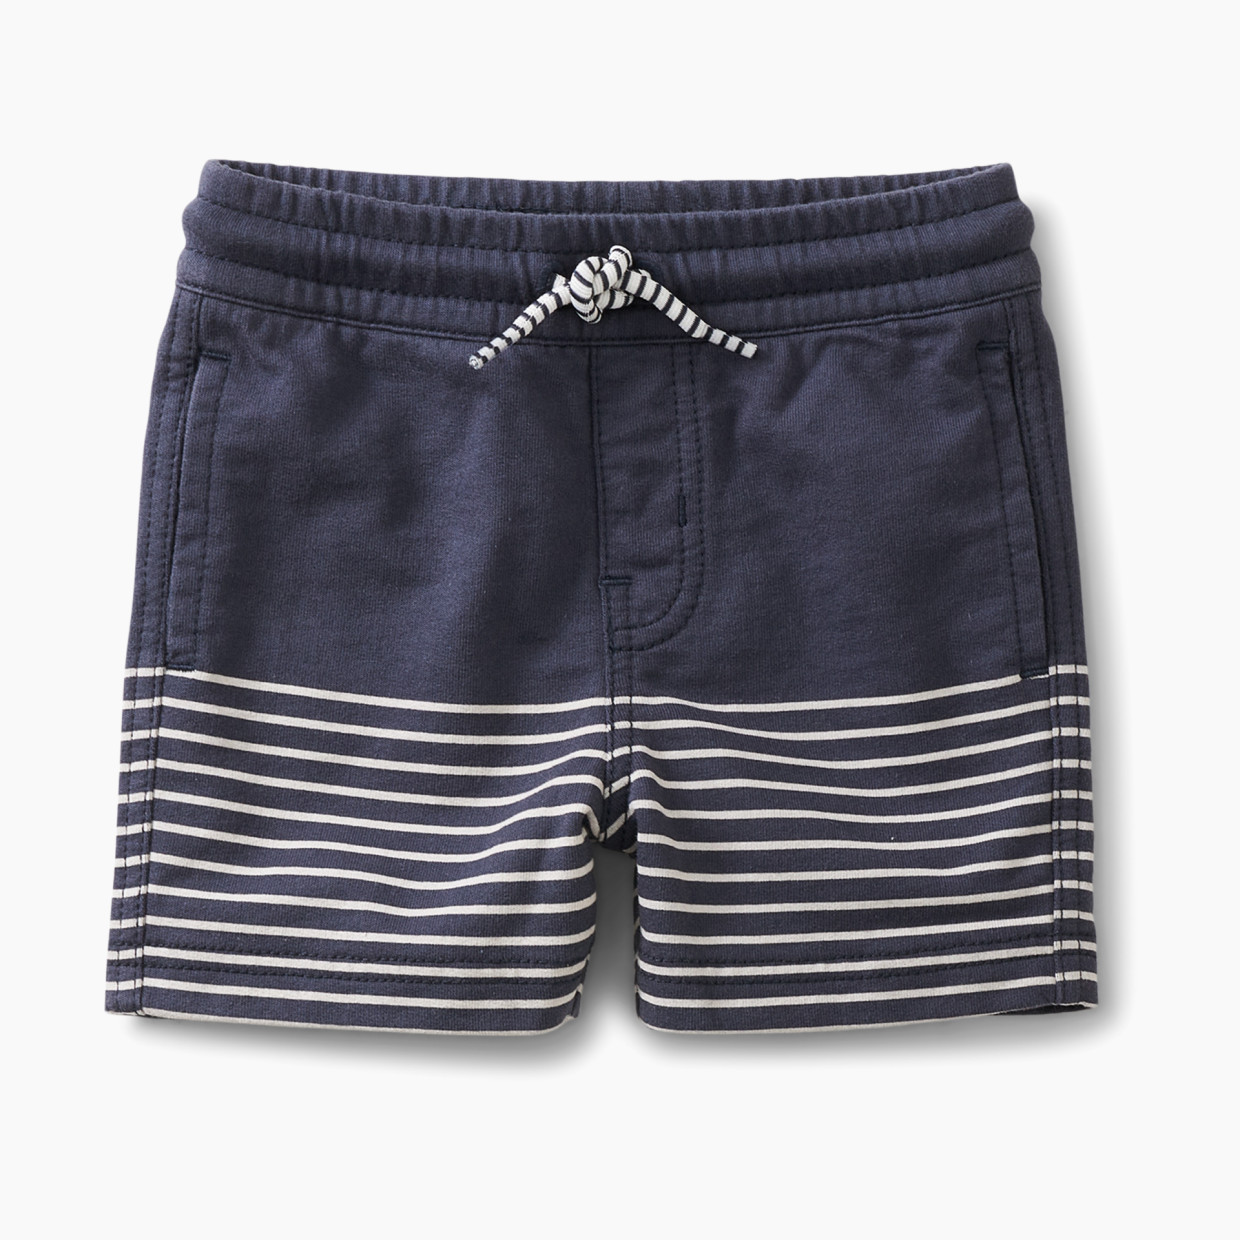 Tea Collection Beach Shorts - Indigo, 9-12 Months.